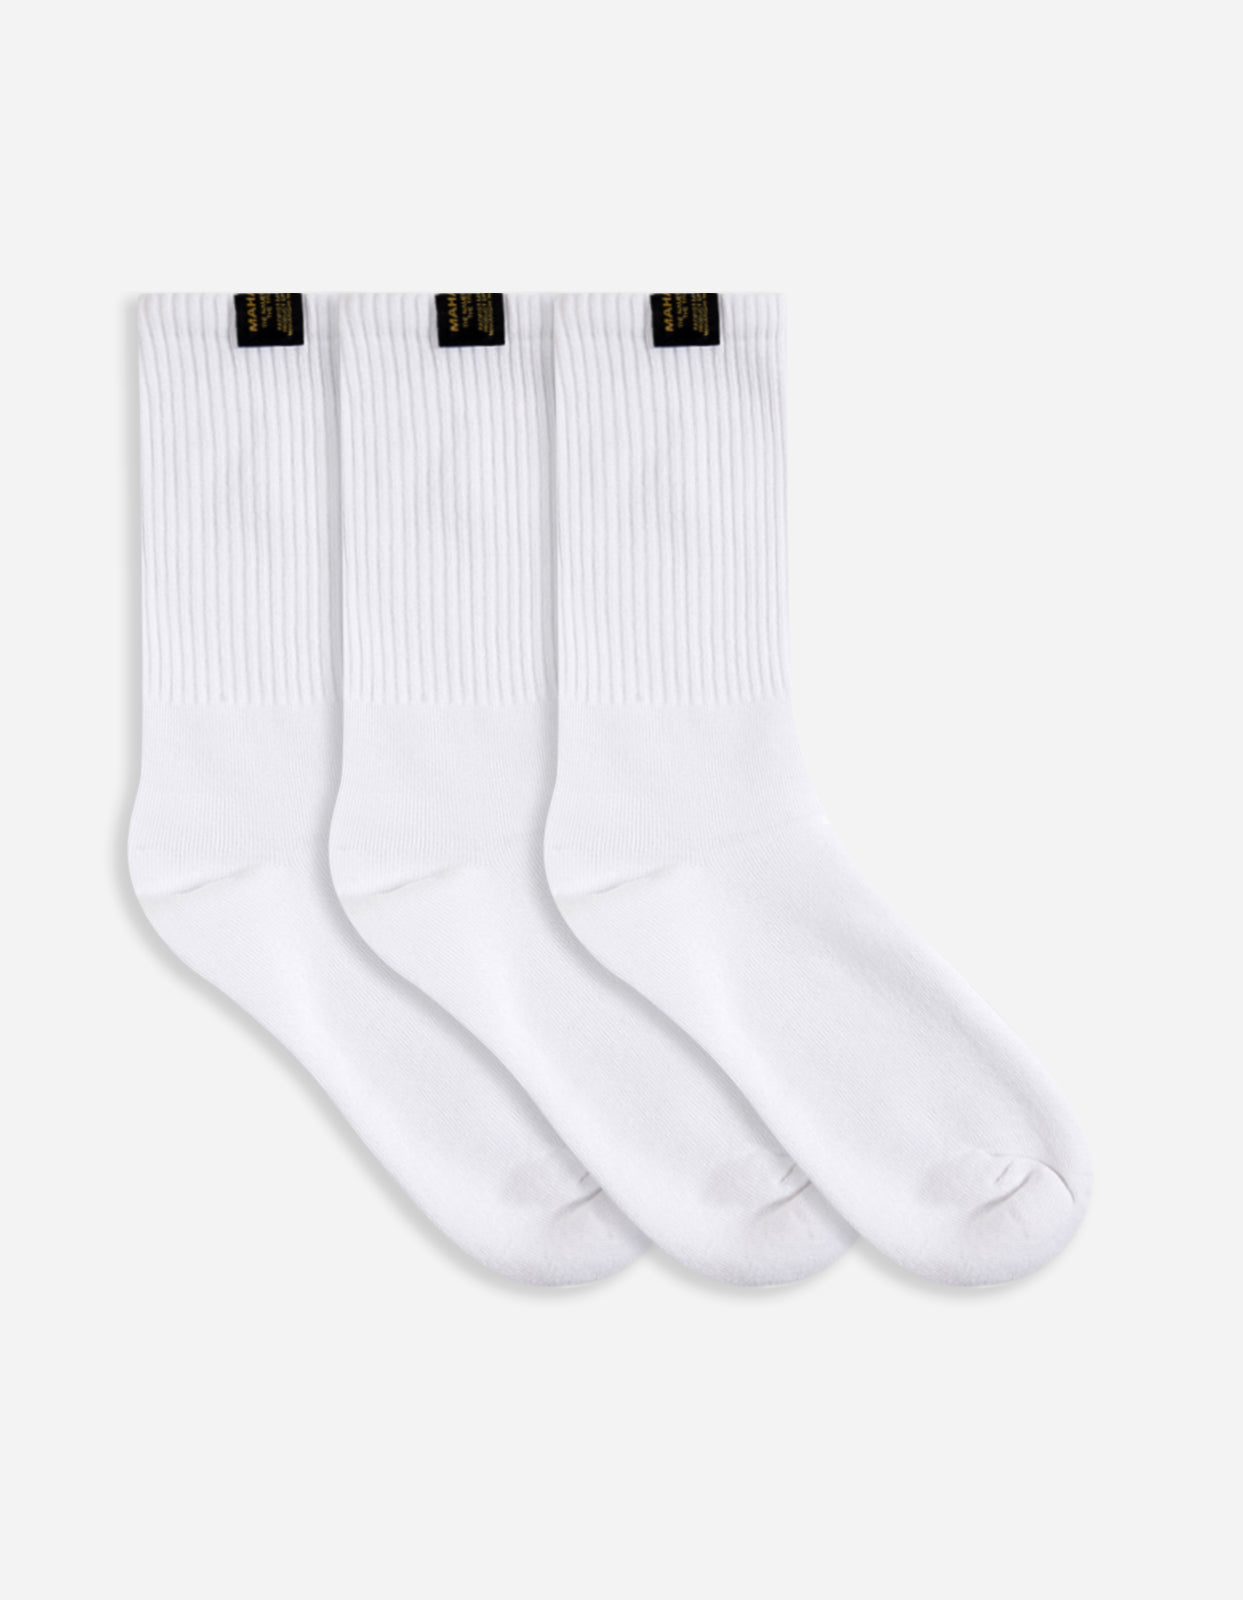 9273 MILTYPE Sport Sock · 3 Pack White/White/White